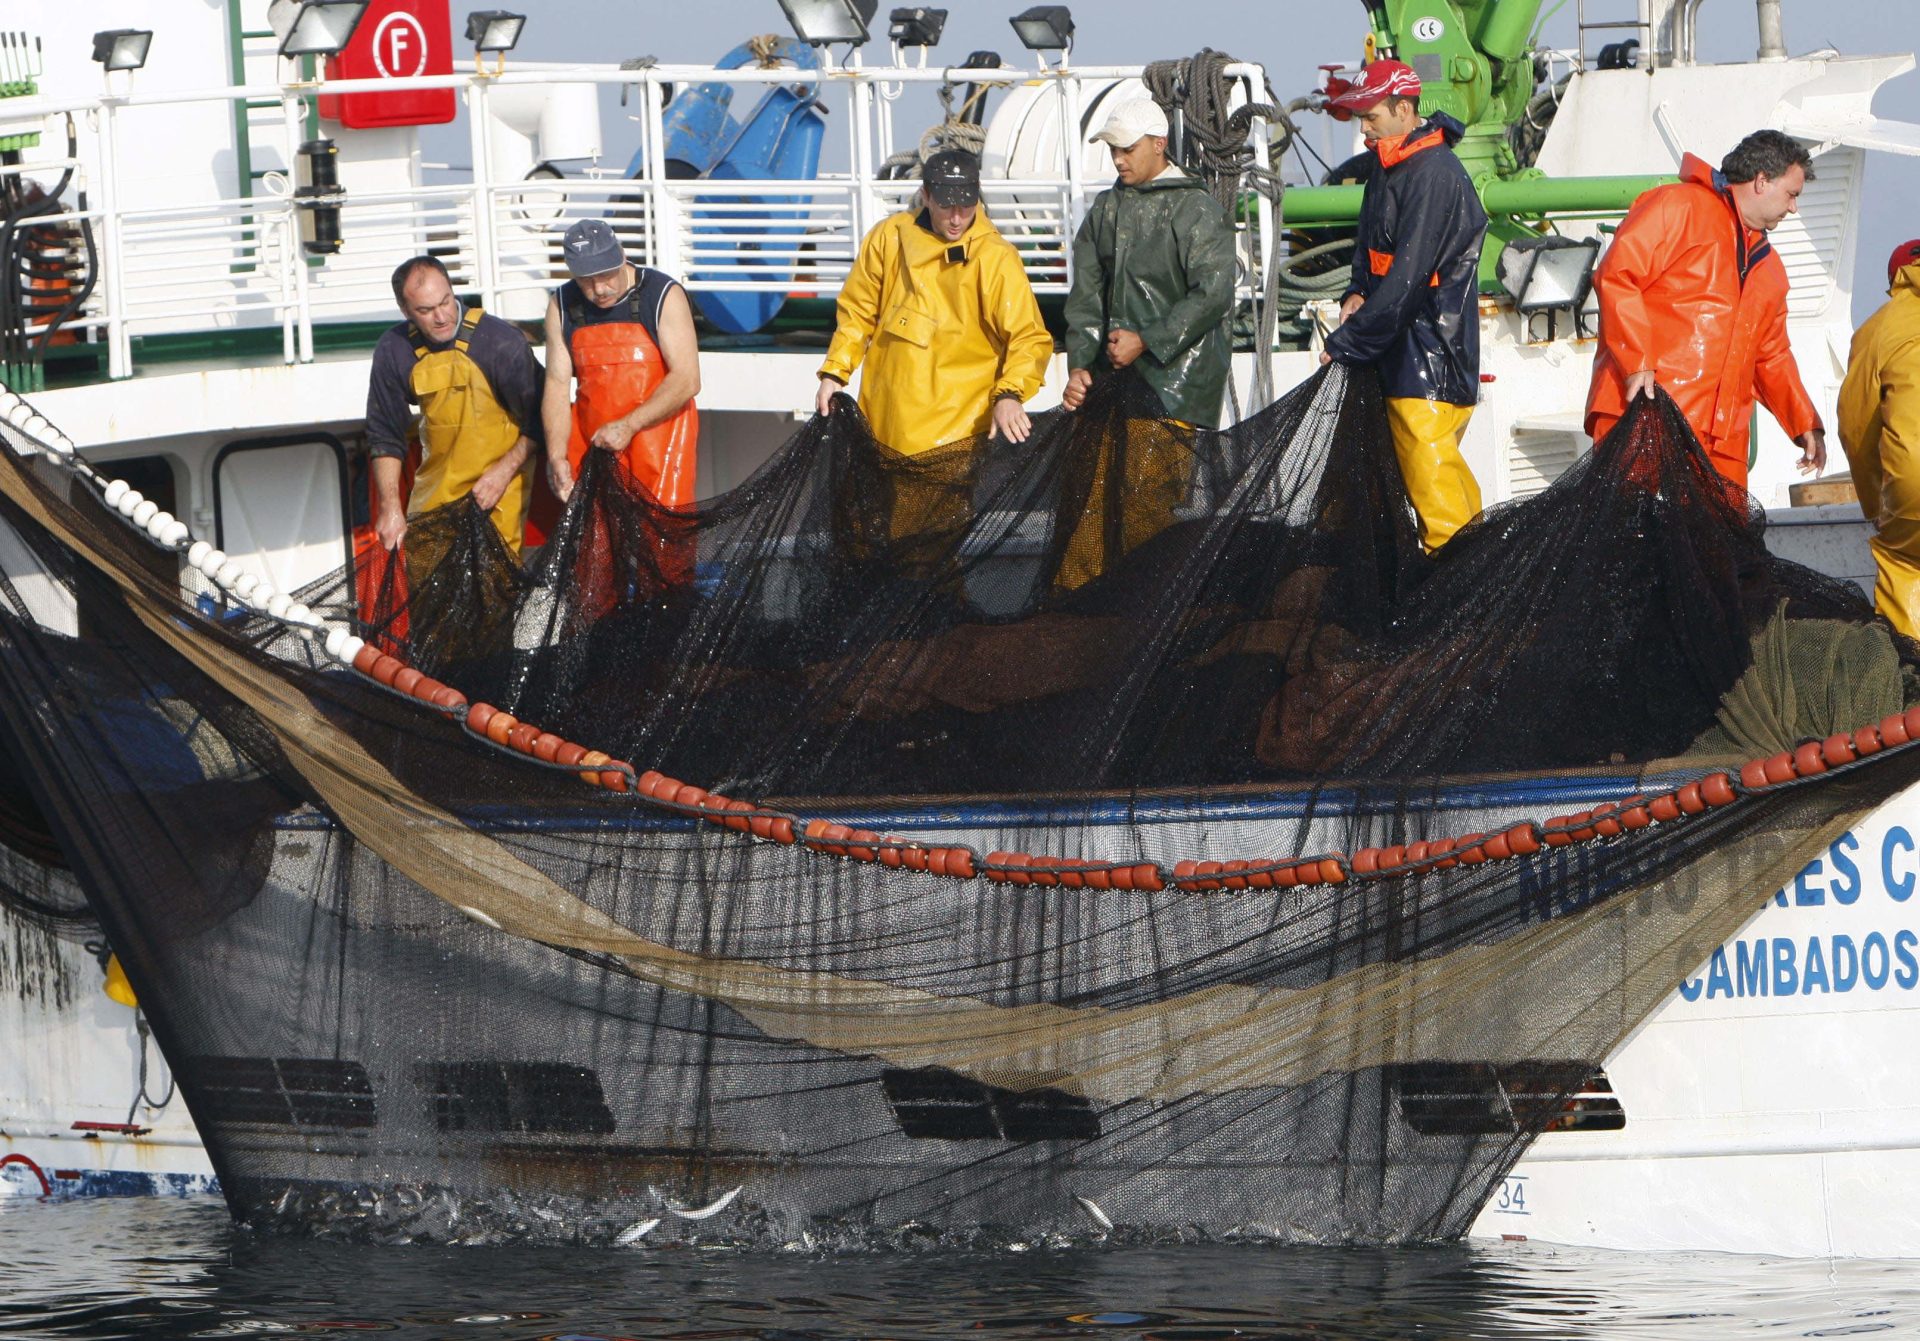 Marineros gallegos pescando sardina. Efeagro/Lavandeira jr